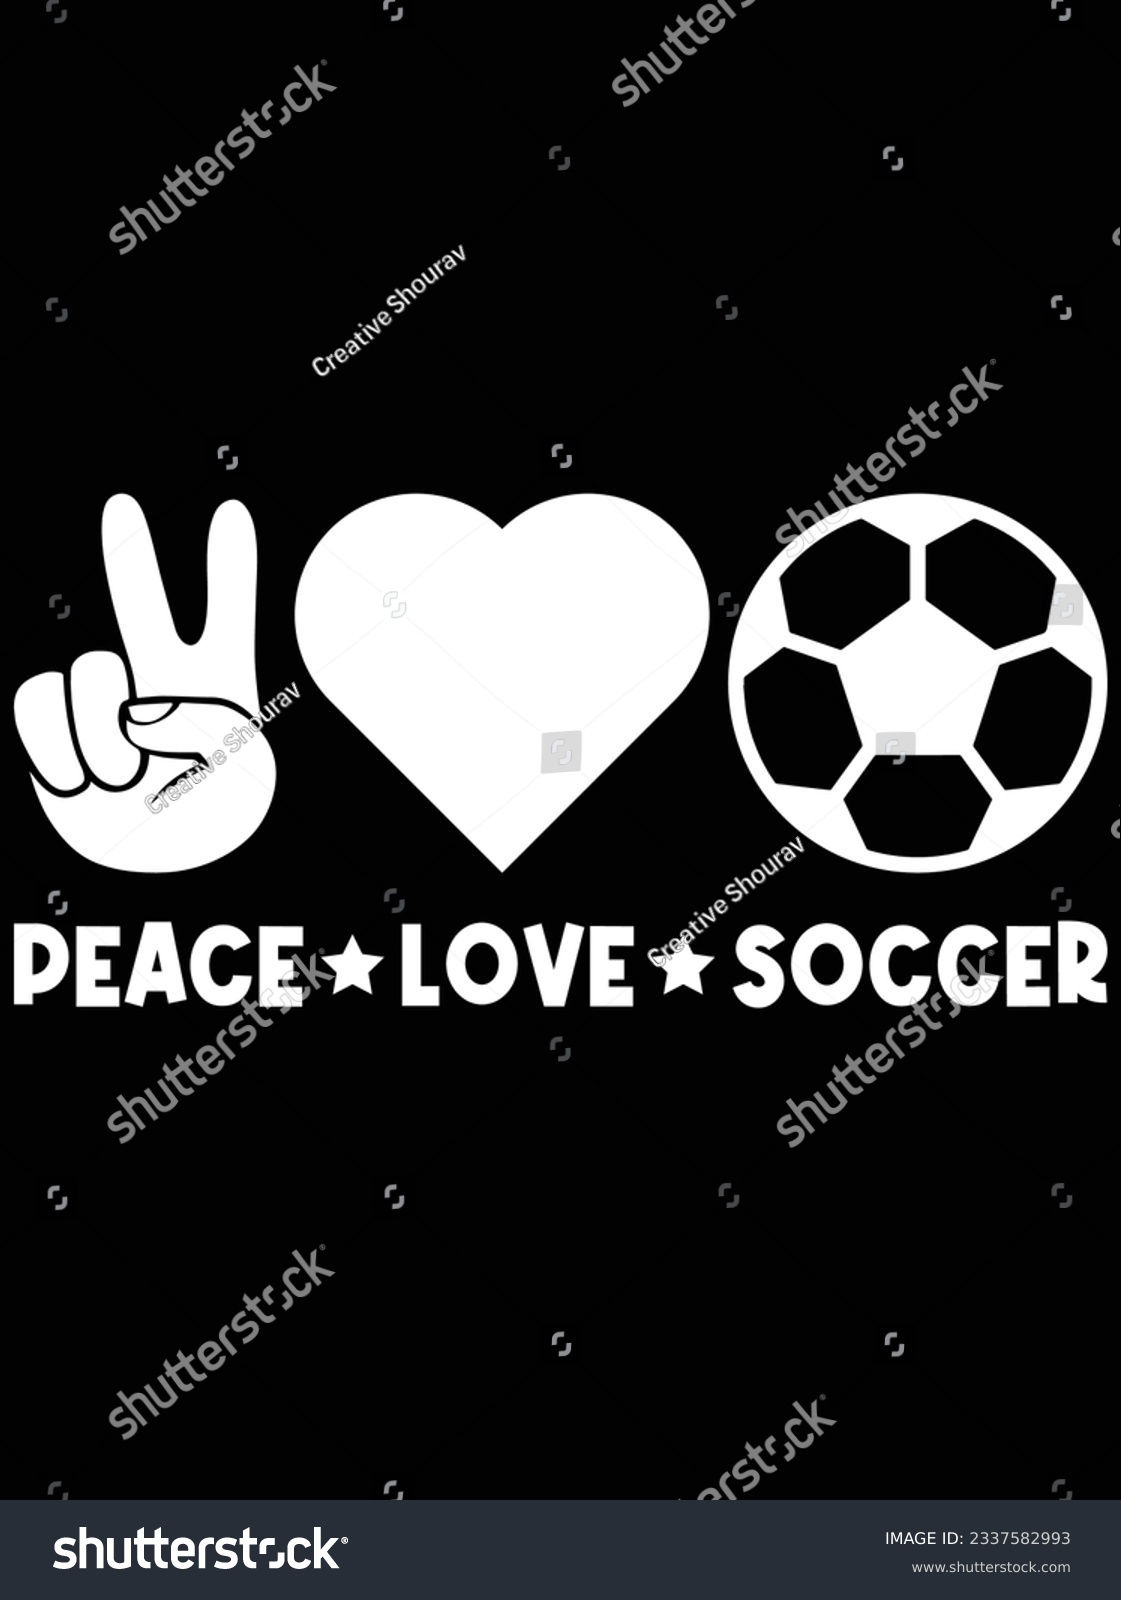 SVG of Peace love soccer vector art design, eps file. design file for t-shirt. SVG, EPS cuttable design file svg